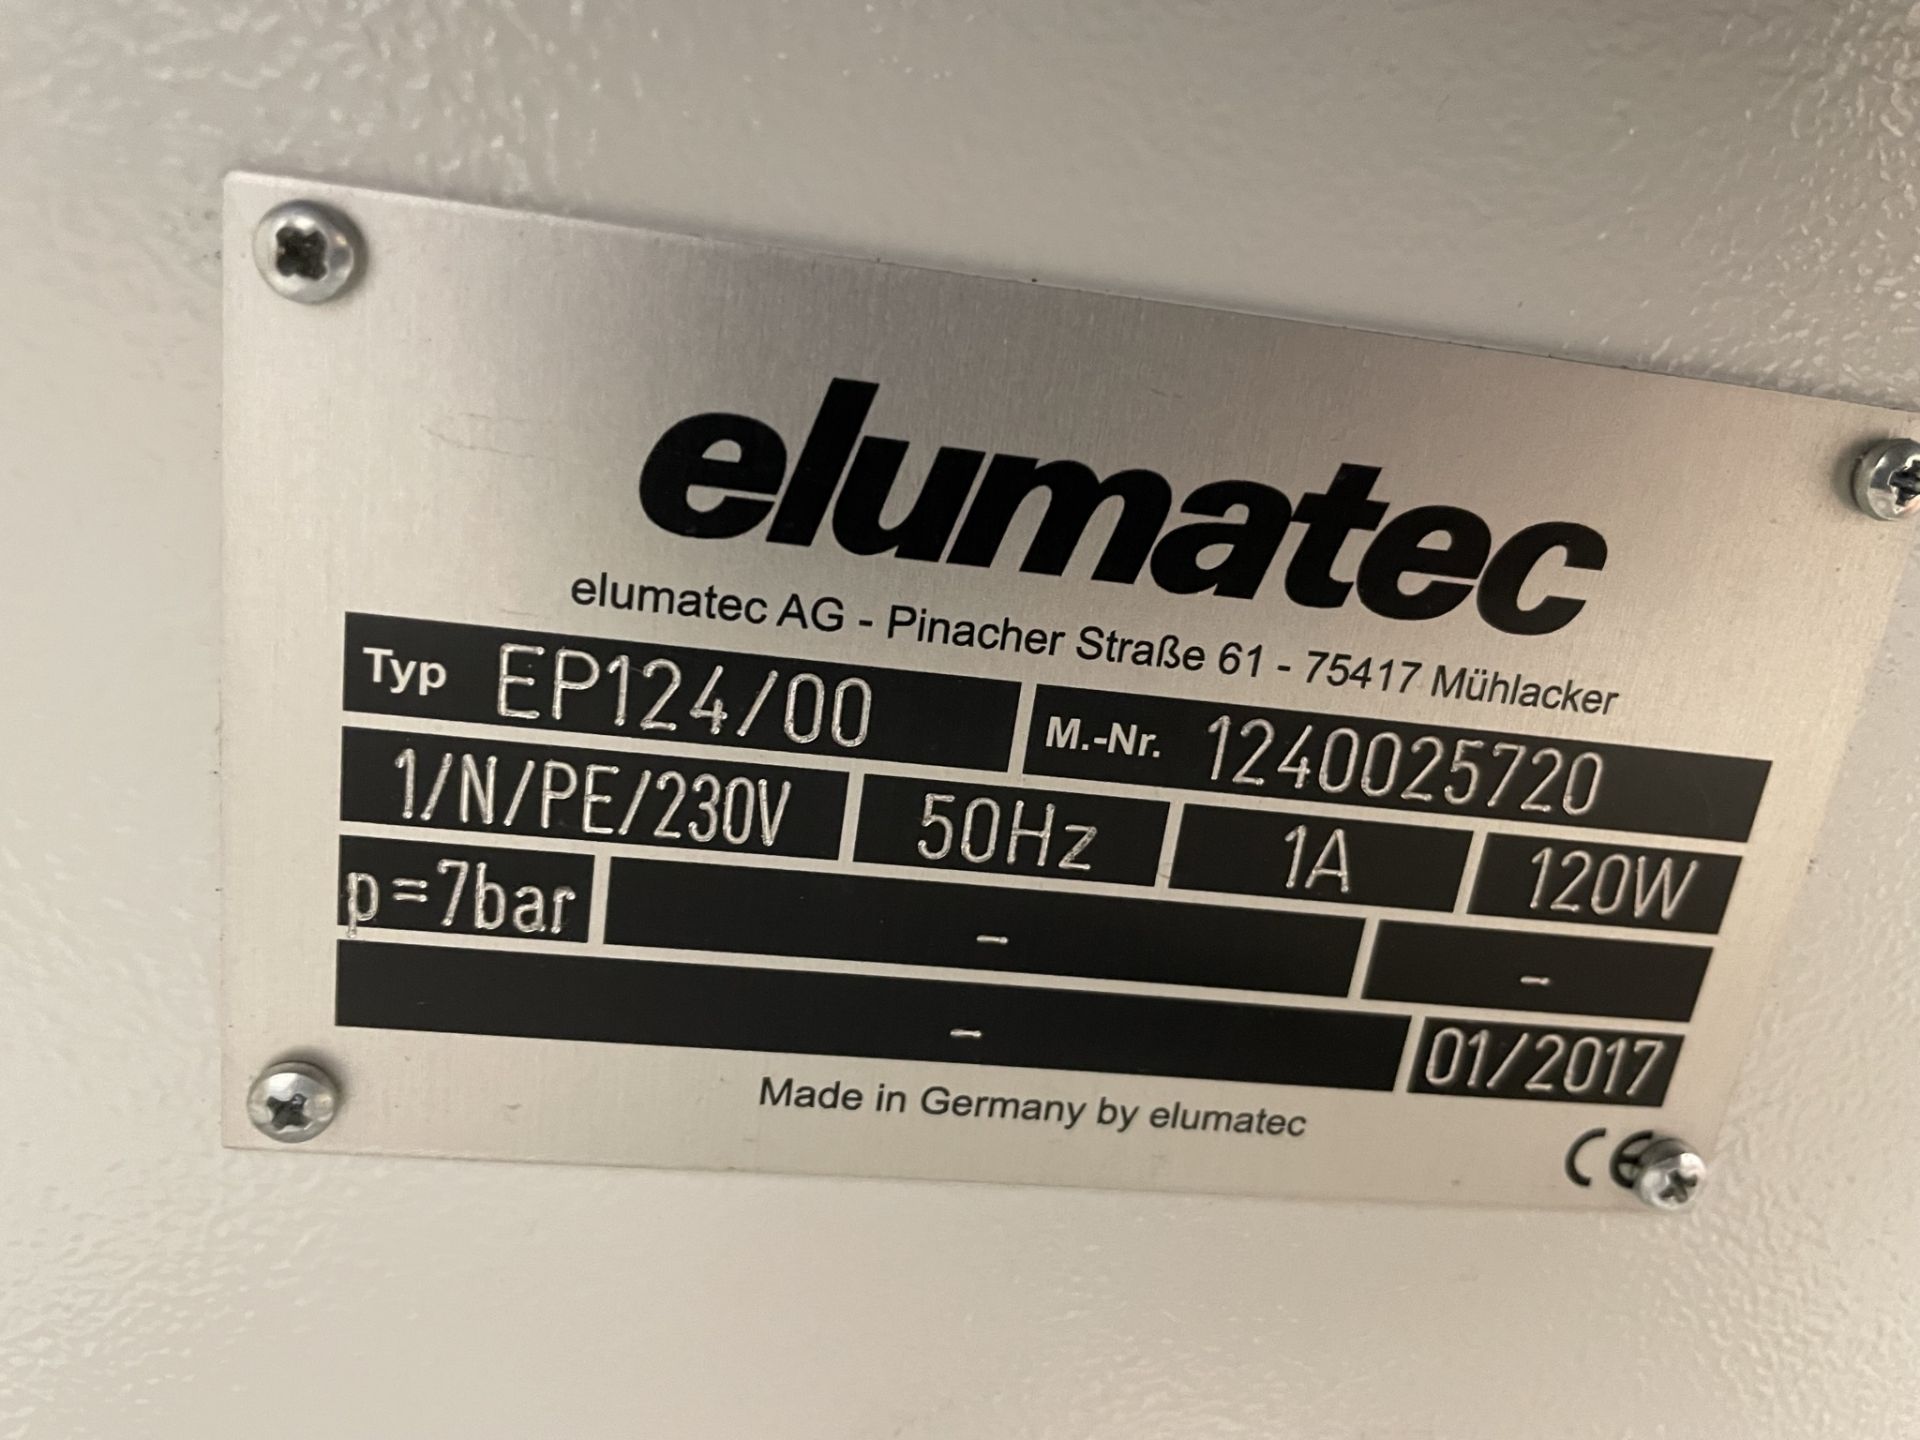 Elumatec, EP124/00 corner crimping machine, Serial No. 1240025720 (DOM: 2017), 40 pairs crimping - Image 4 of 5